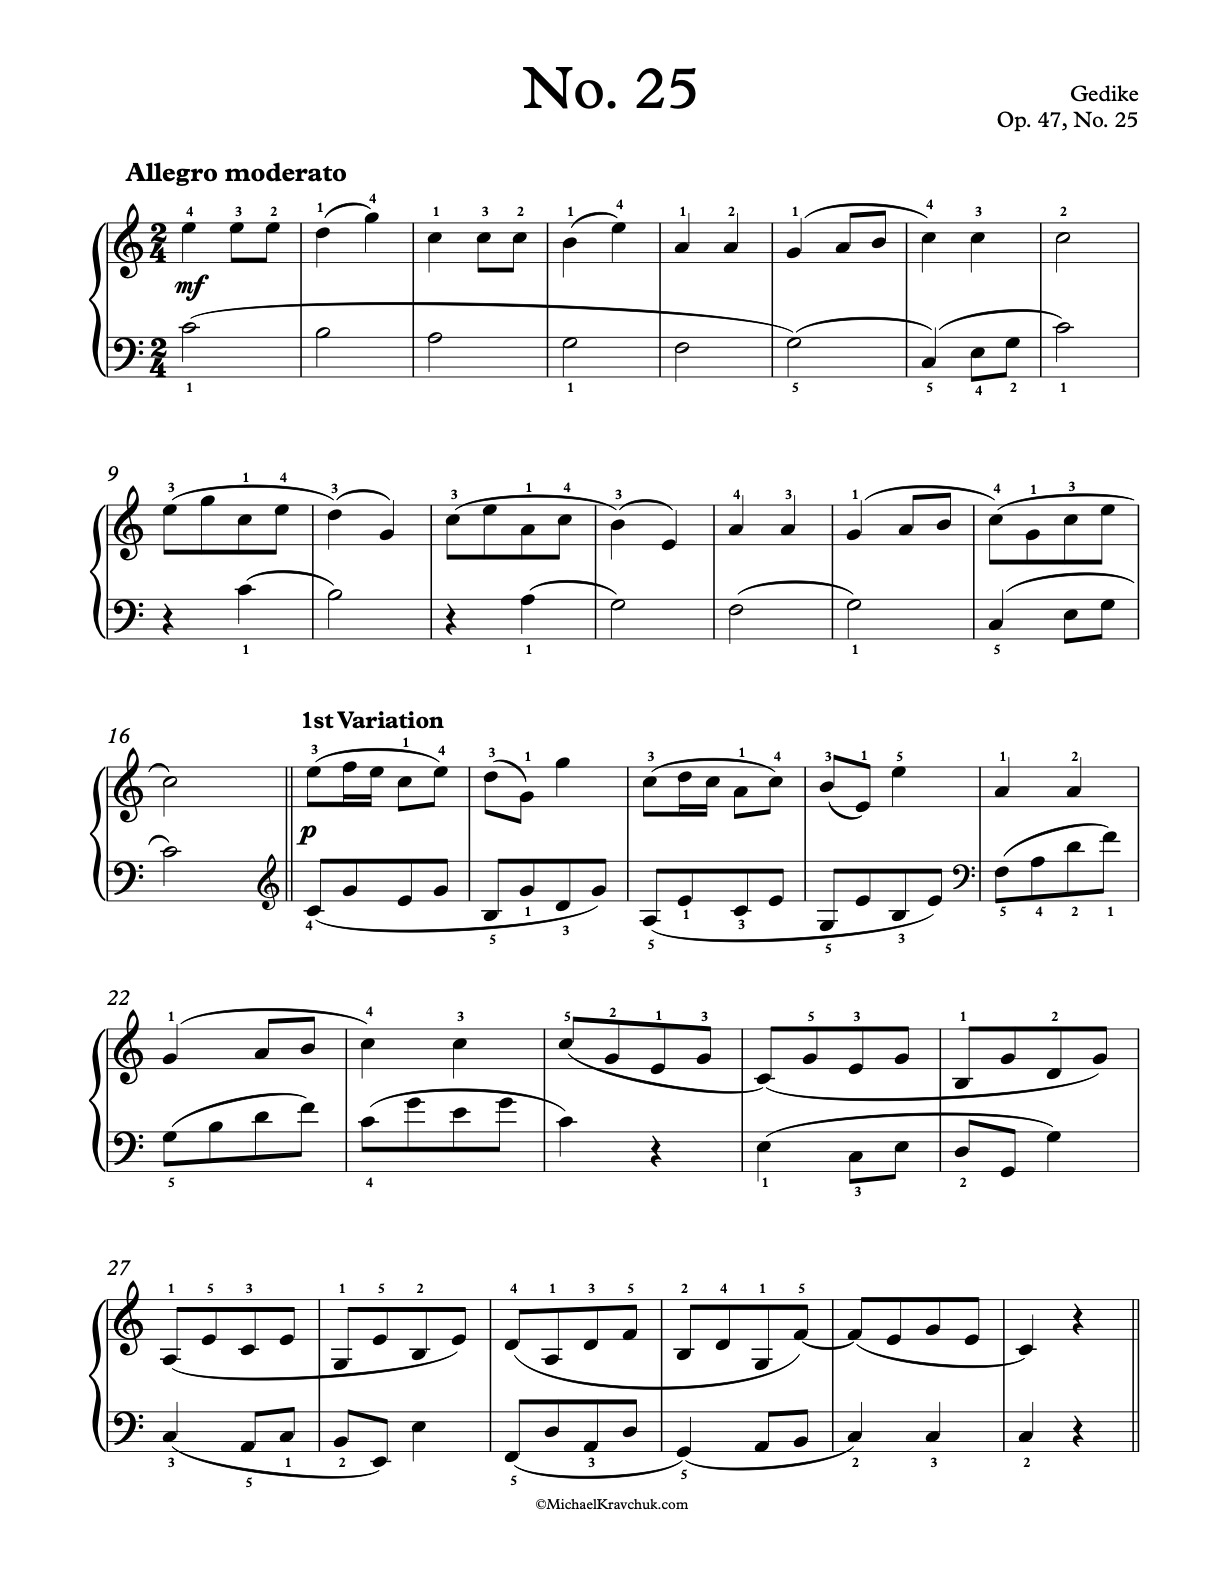 Op. 47, No. 25 Piano Sheet Music